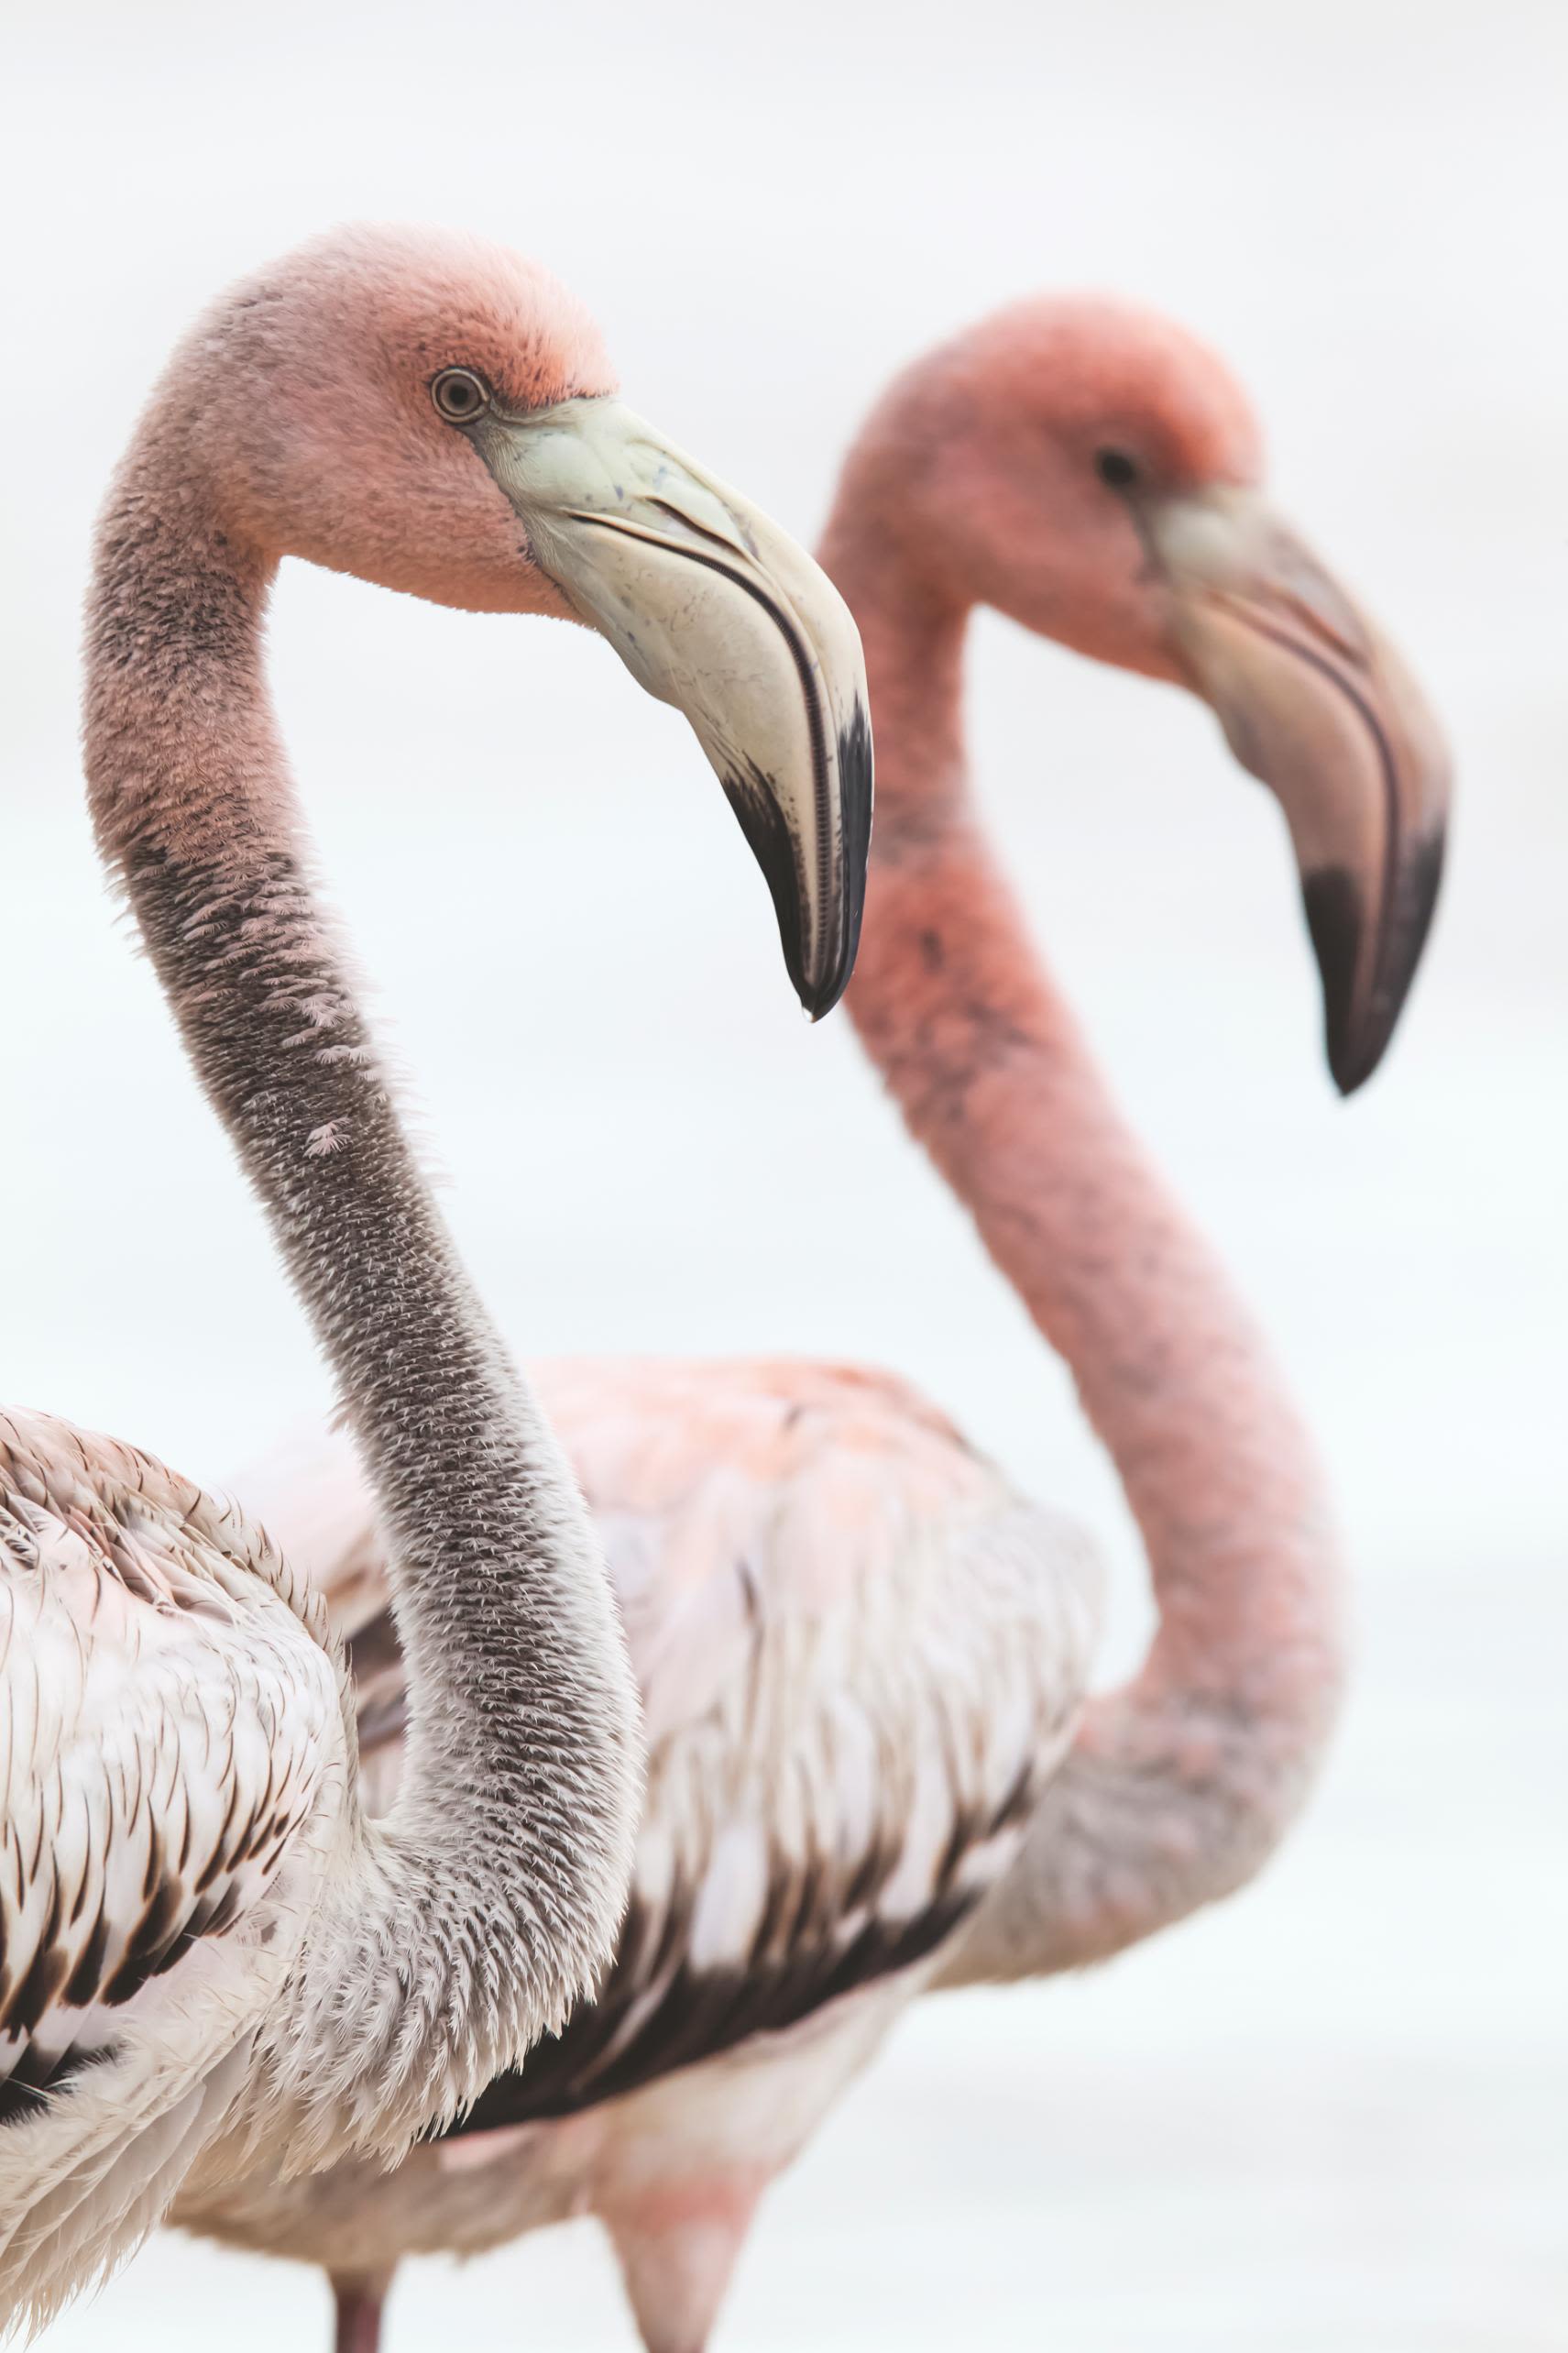 https://media.cnn.com/api/v1/images/stellar/prod/220608163840-restricted-10-flamingos-mexico.jpg?c=original